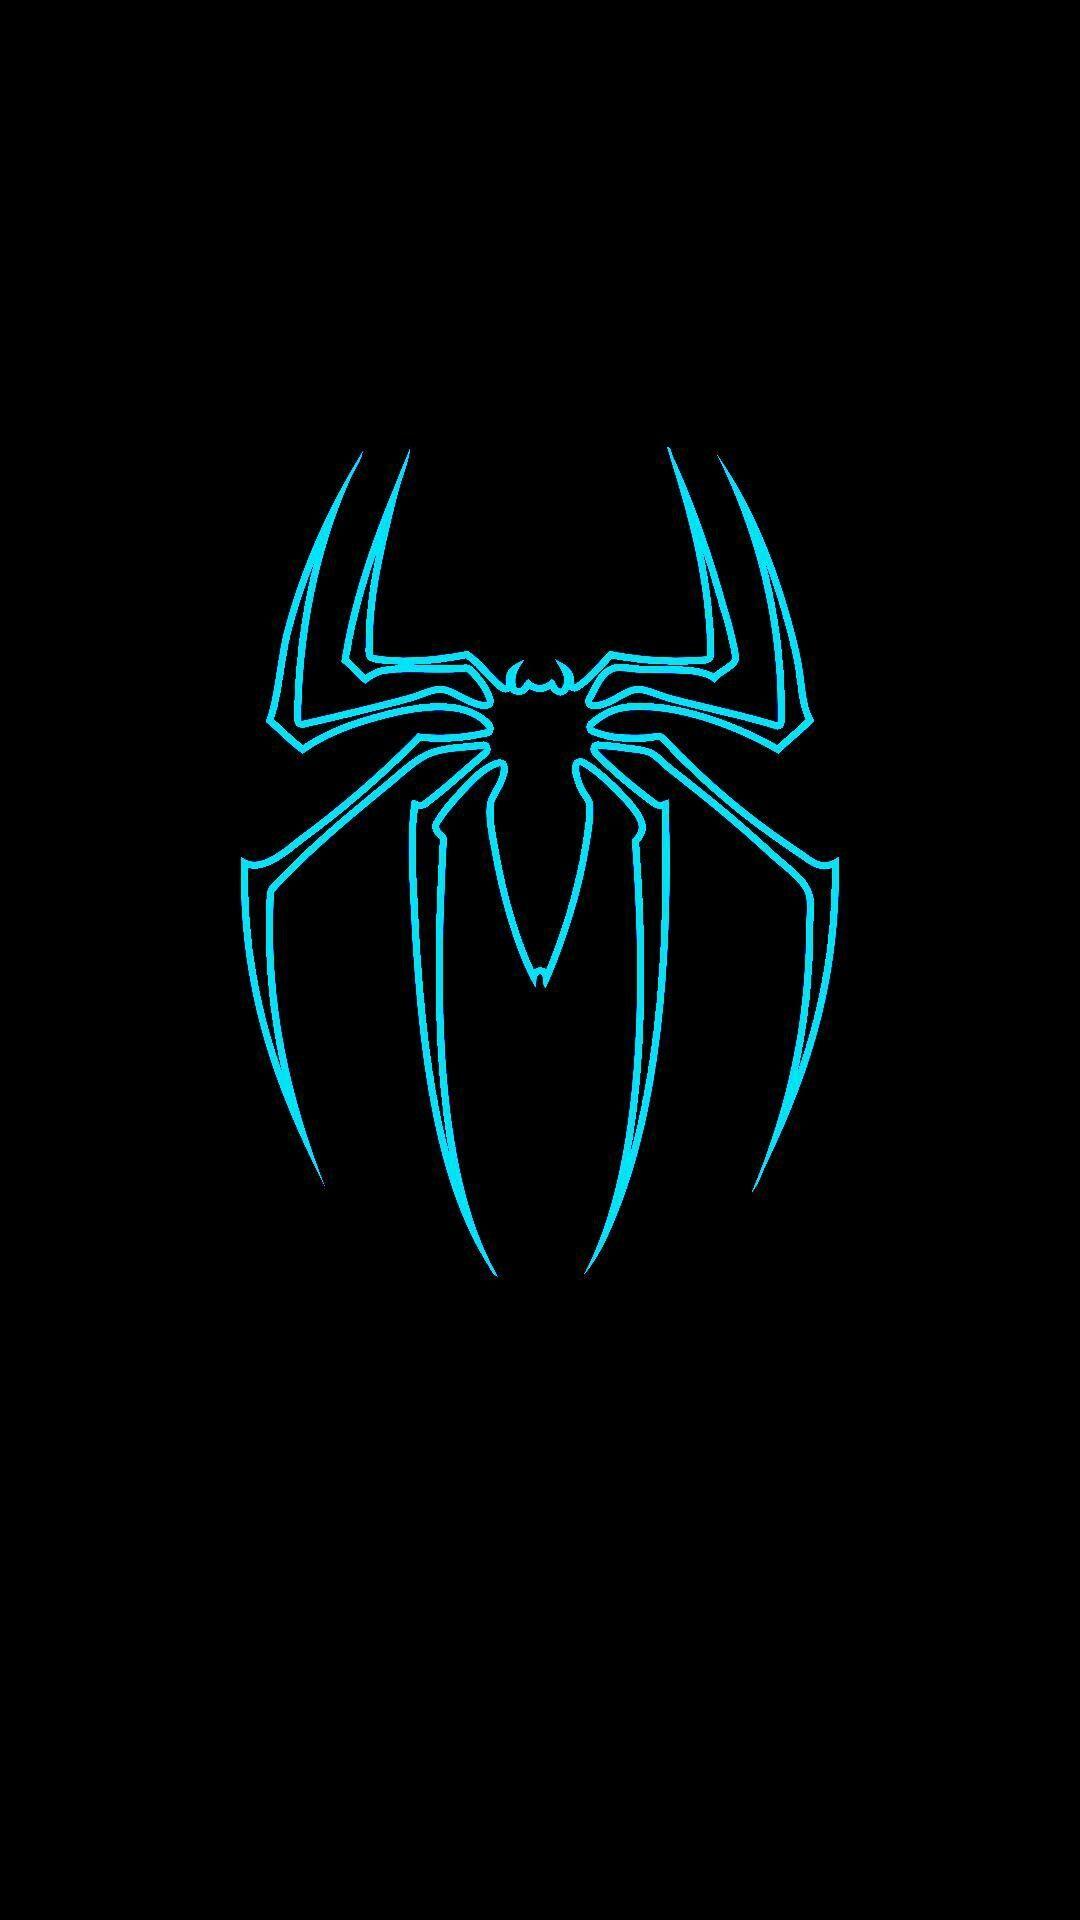 SpiderMan Venom Logo iPhone Wallpaper by truillusionstudios on DeviantArt